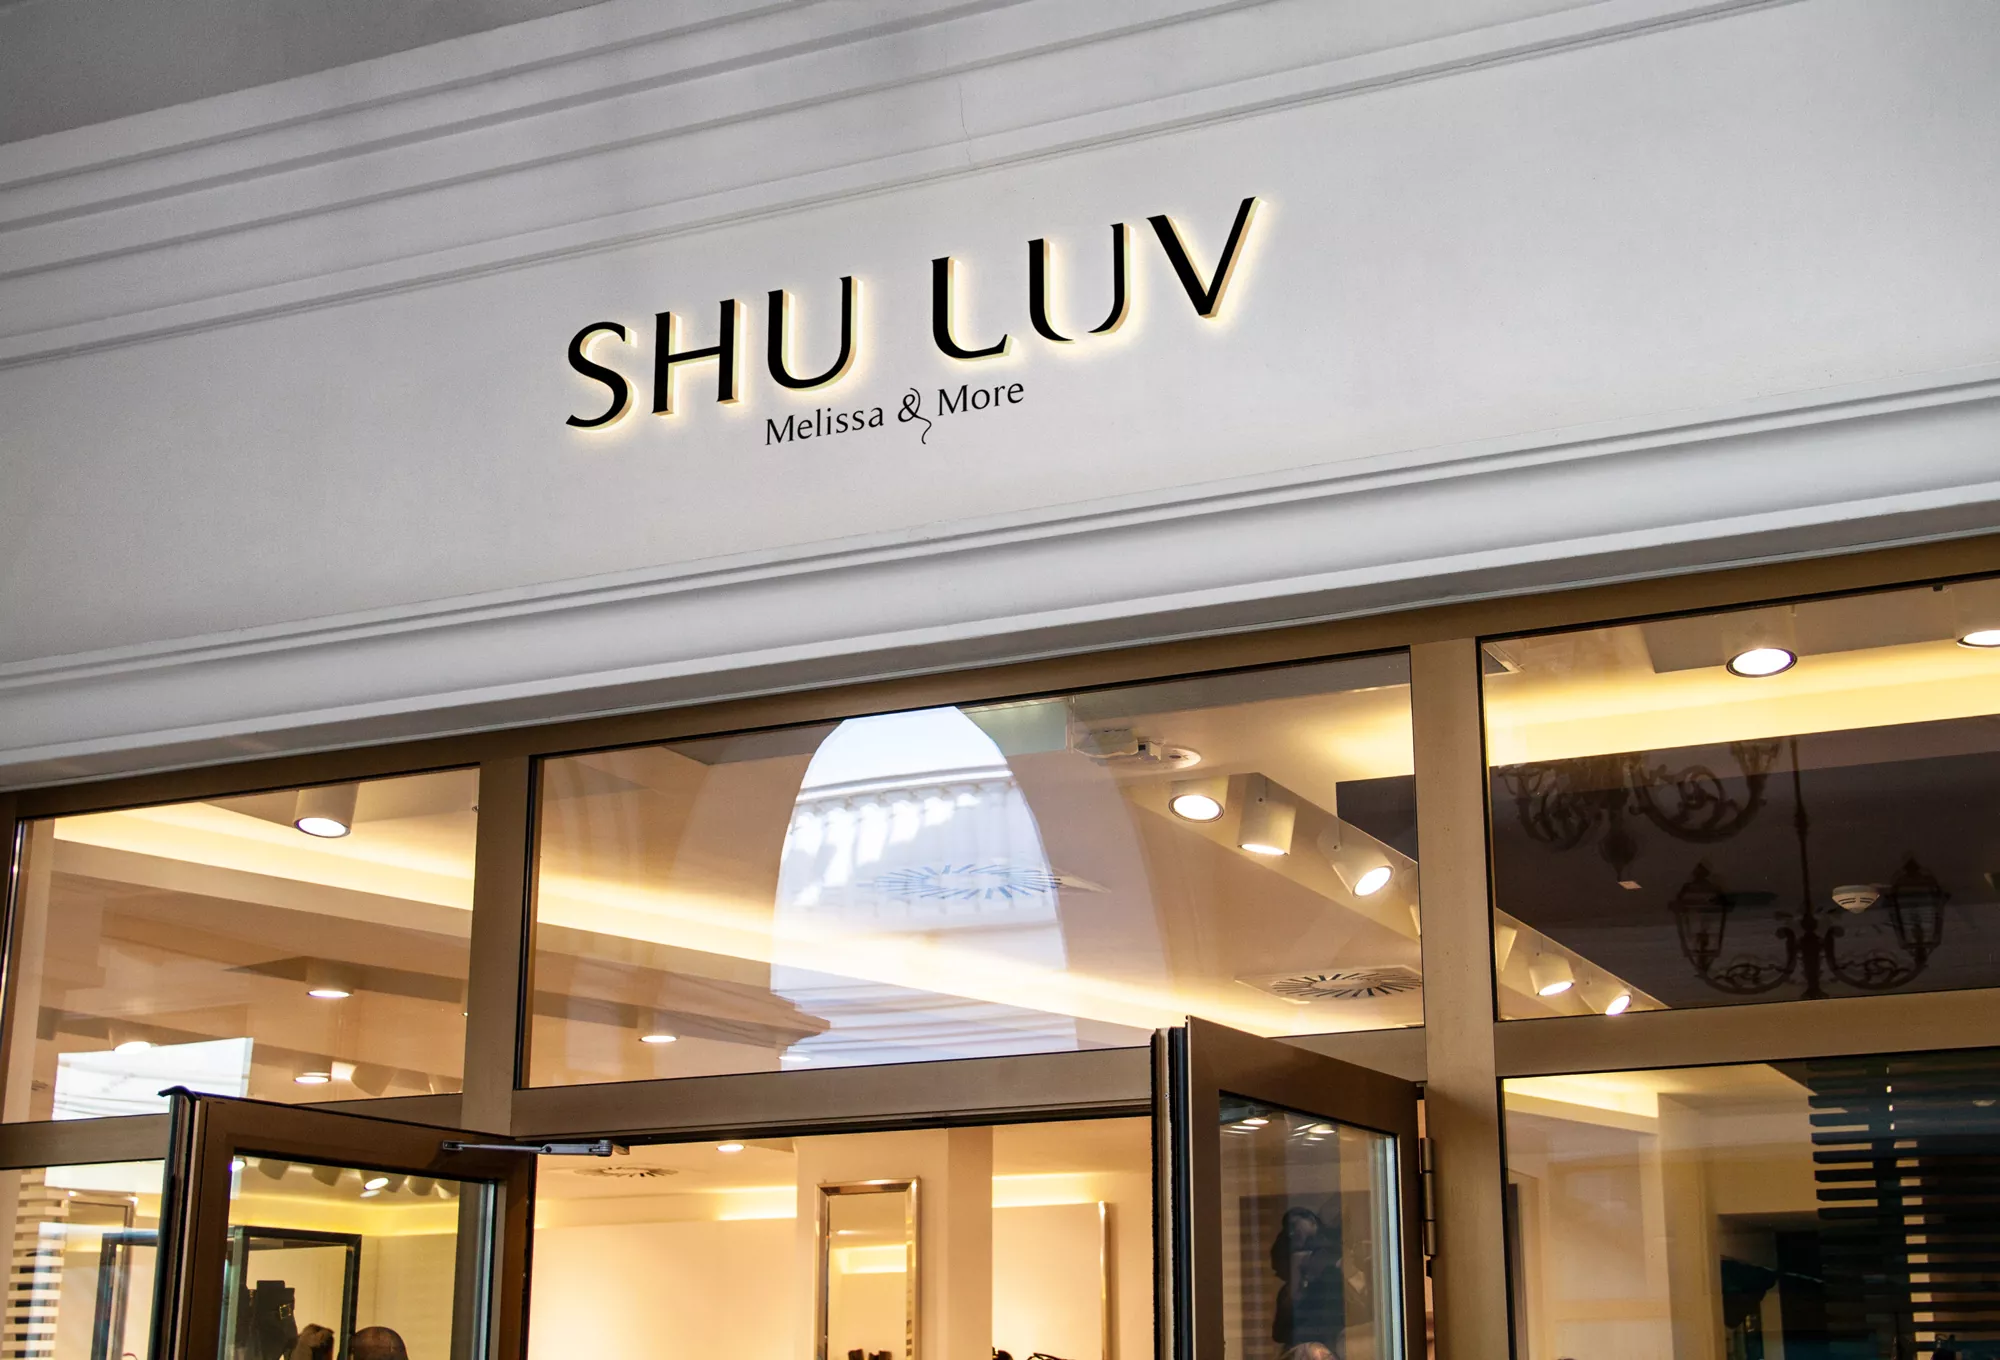 Shuluv: Melissa & More - projekt loga dla marki obuwniczej wizualizacja szyldu sklepu